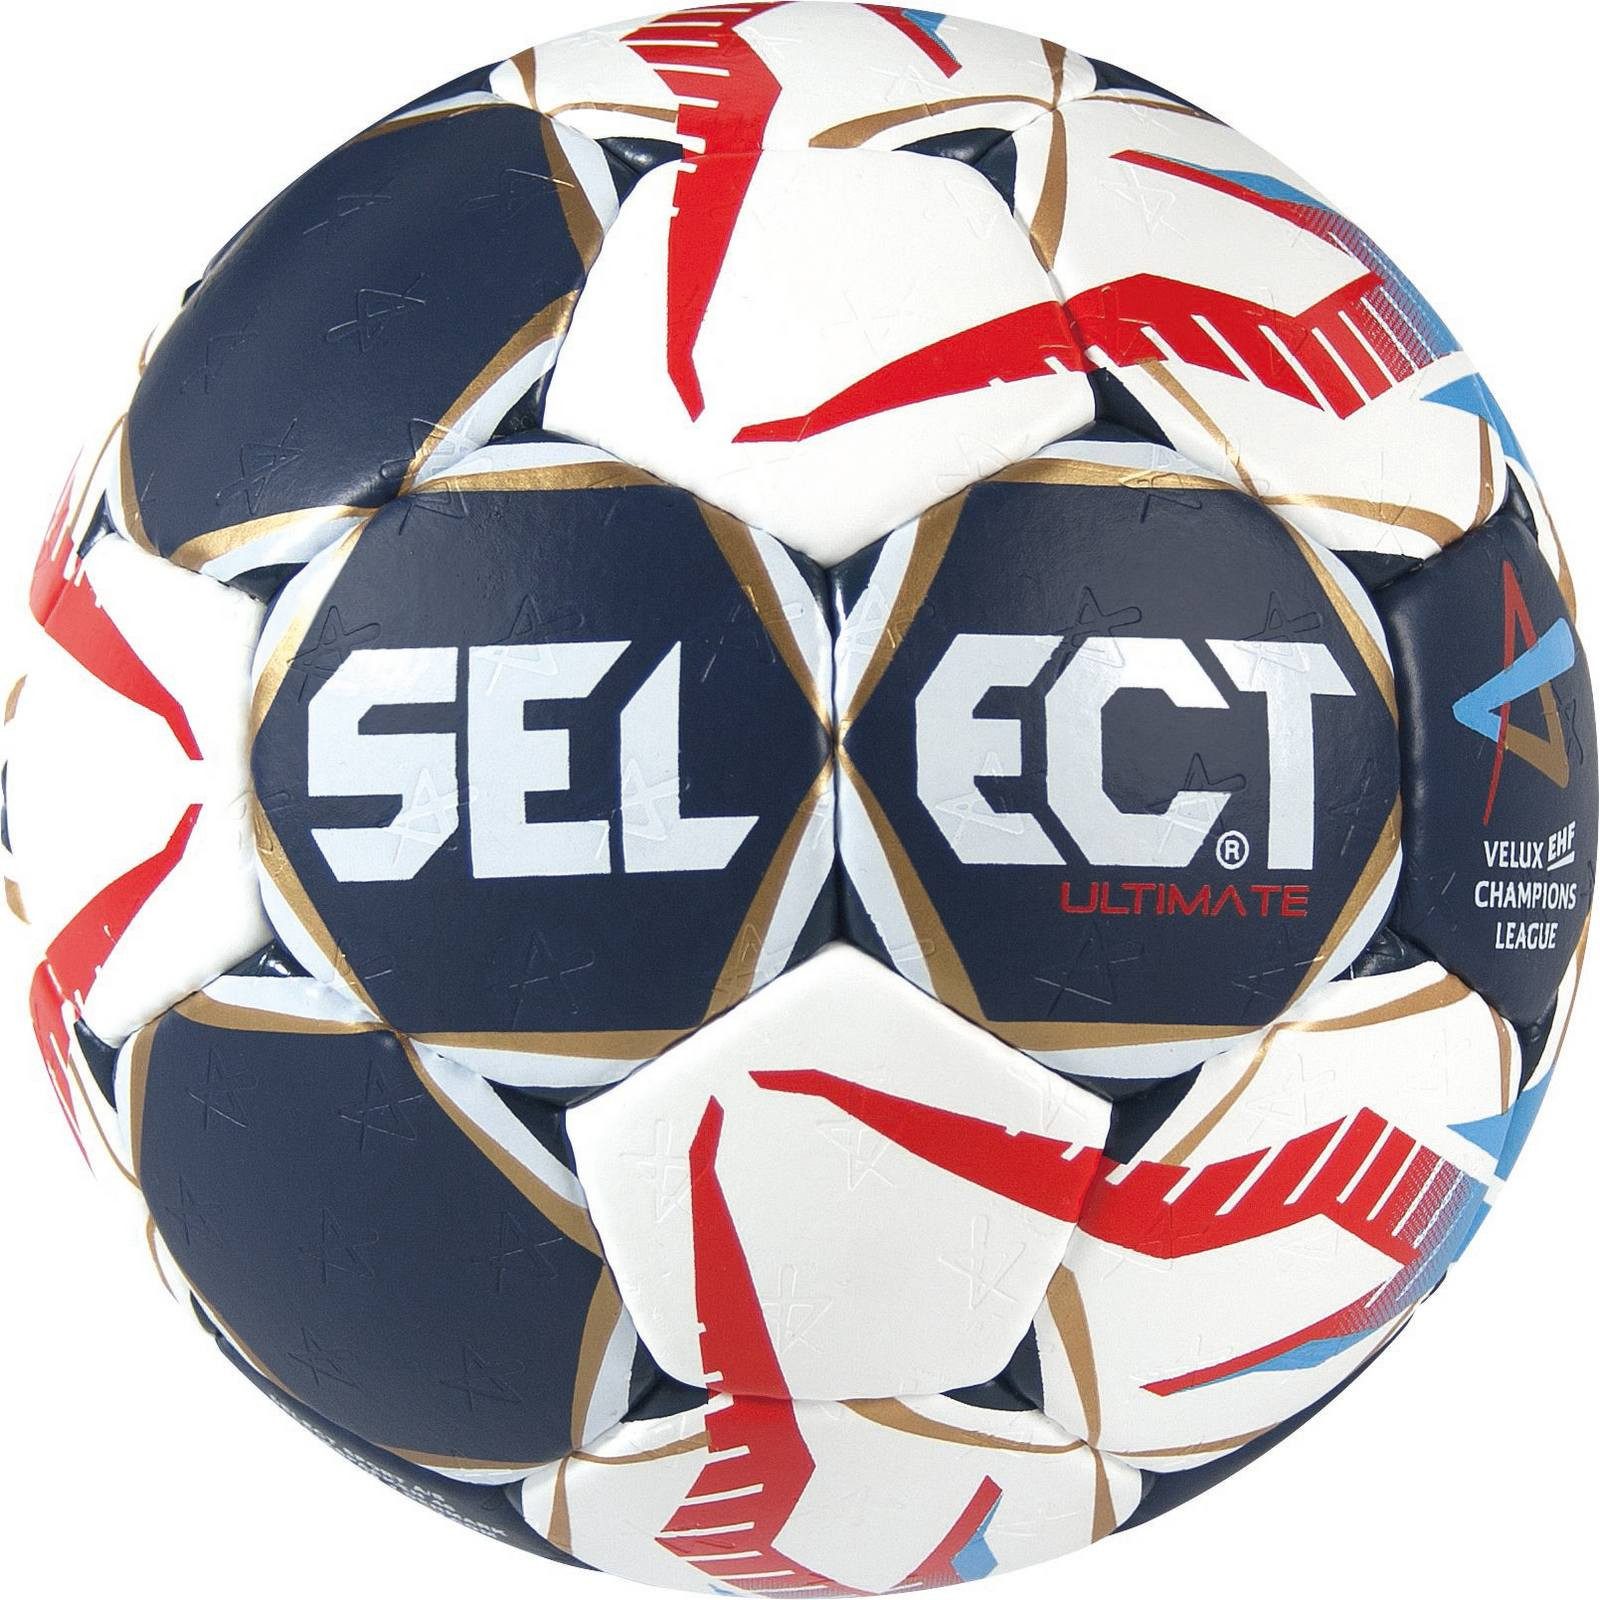 Select Handball Ultimate CL für Herren